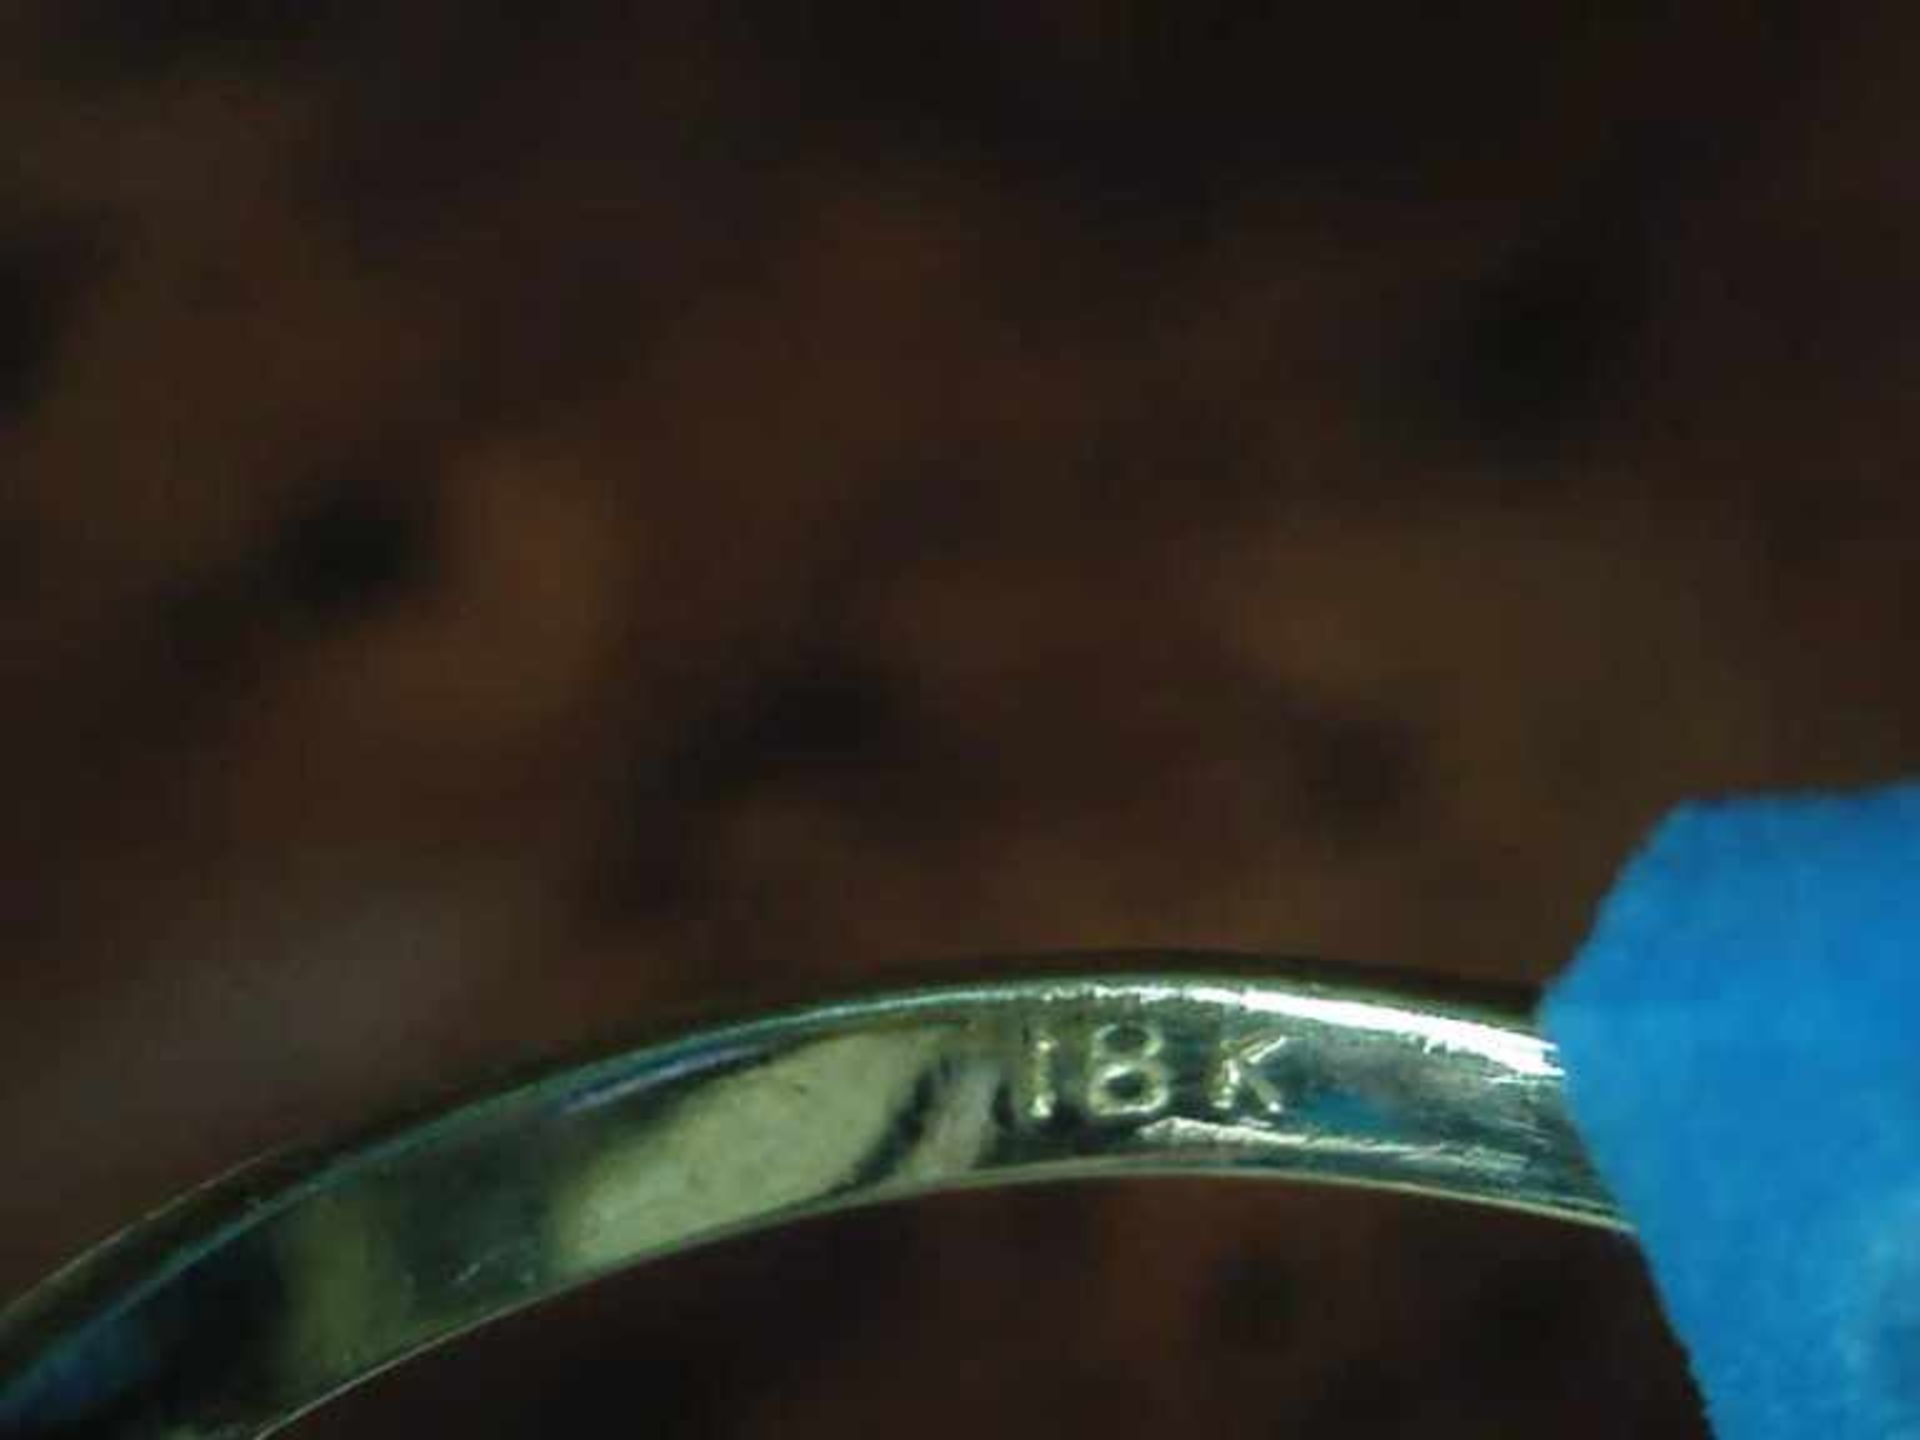 Damenring 750er GG, 2,6 g, ungewöhnlicher blütenförmiger Ringkopf, mit 3 tropfenförmigen Blautopasen - Bild 2 aus 2